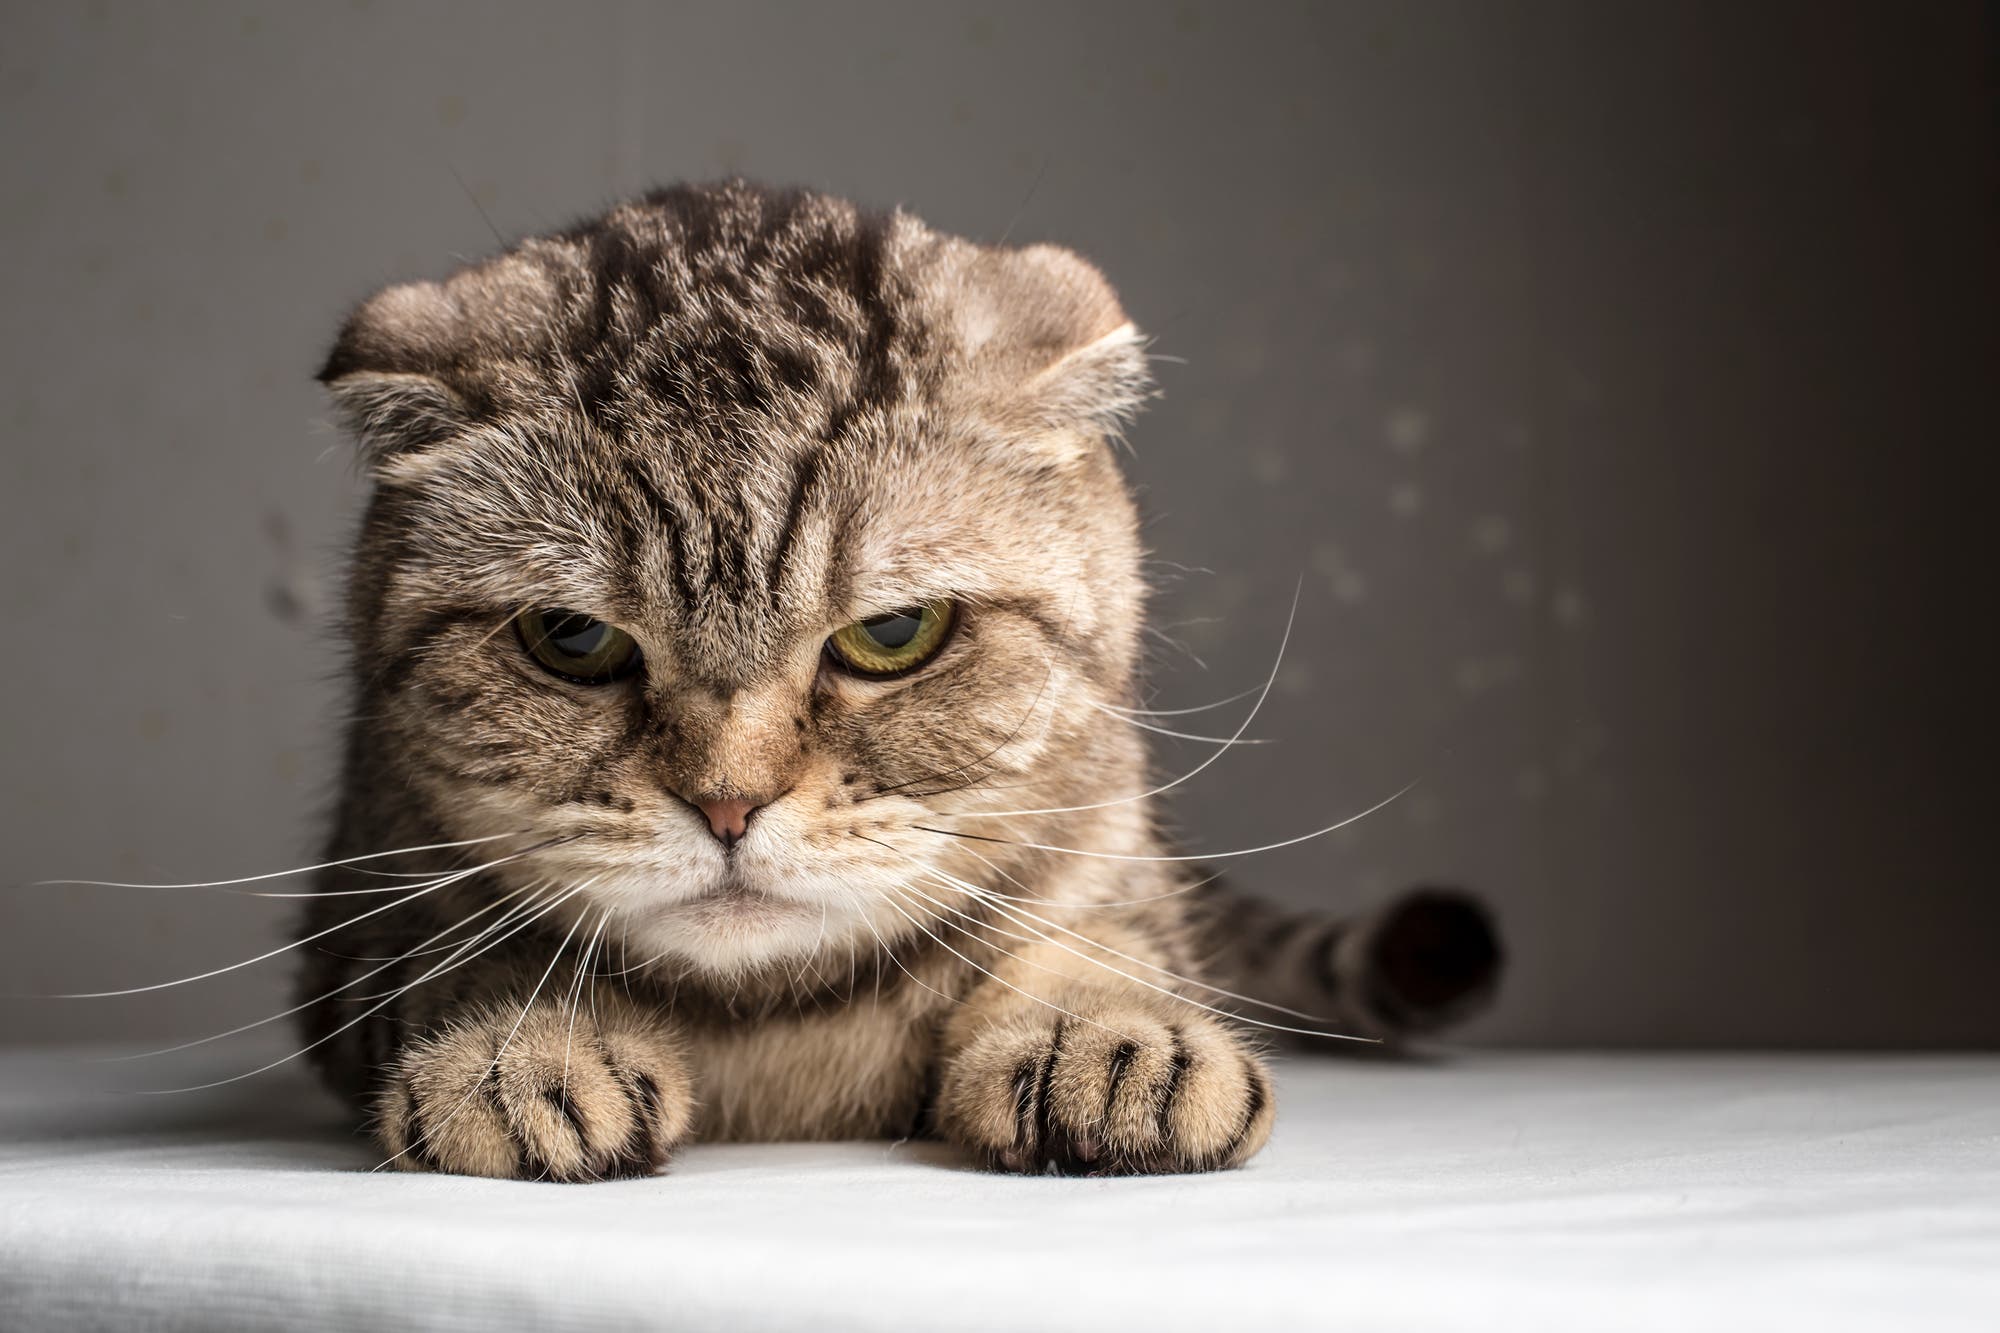 Katzen können auch schlechte Laune haben